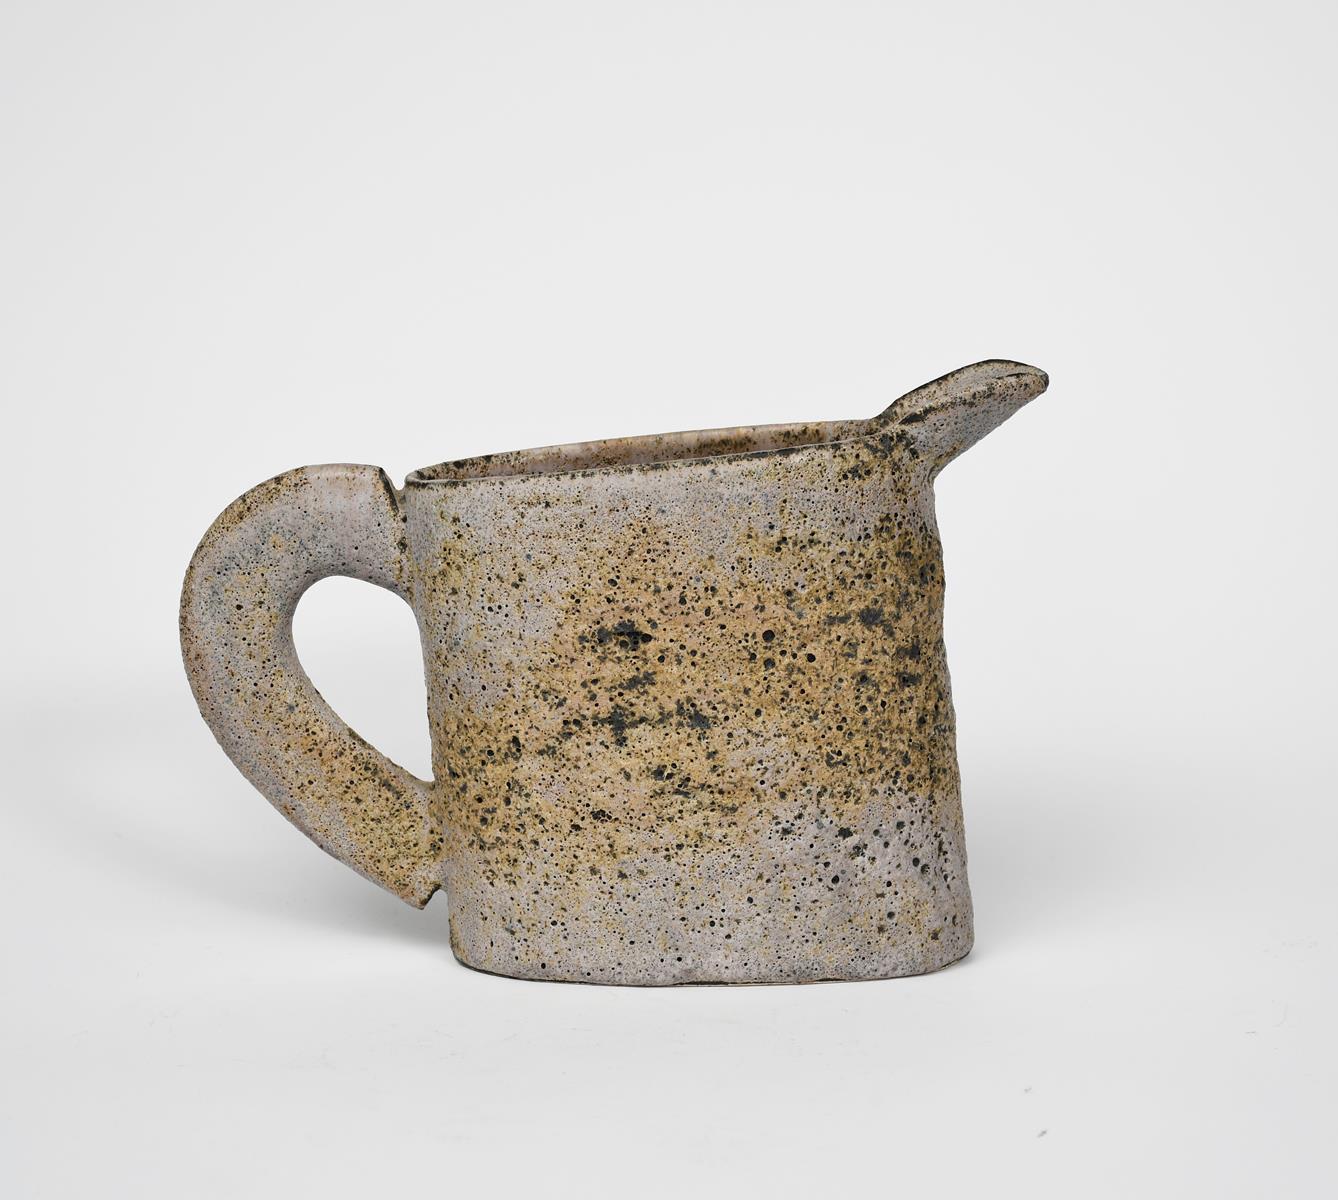 Emmanuel Cooper OBE (1938-2012) stoneware jug form pitted lavender on tan impressed seal mark - Image 3 of 3